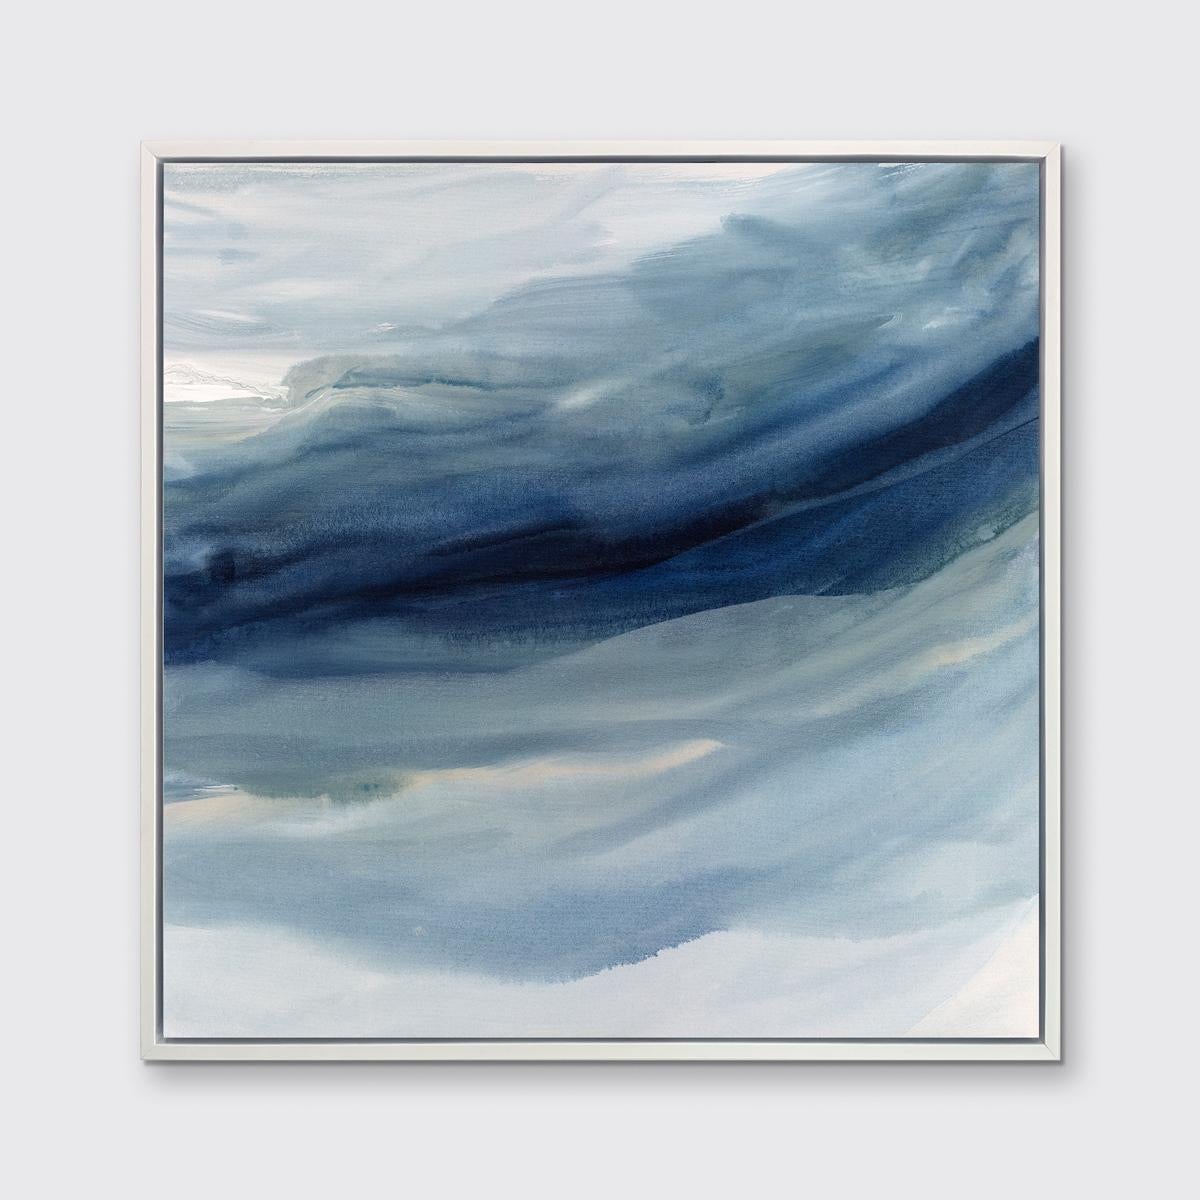 Dieser zeitgenössische Druck in limitierter Auflage von Teodora Guererra zeigt kühle Blau- und Weißtöne mit einer abstrakten Küstenästhetik. Dieser Druck passt hervorragend zu Indigo Sea I - einer limitierten Auflage desselben Künstlers. Wenn Sie